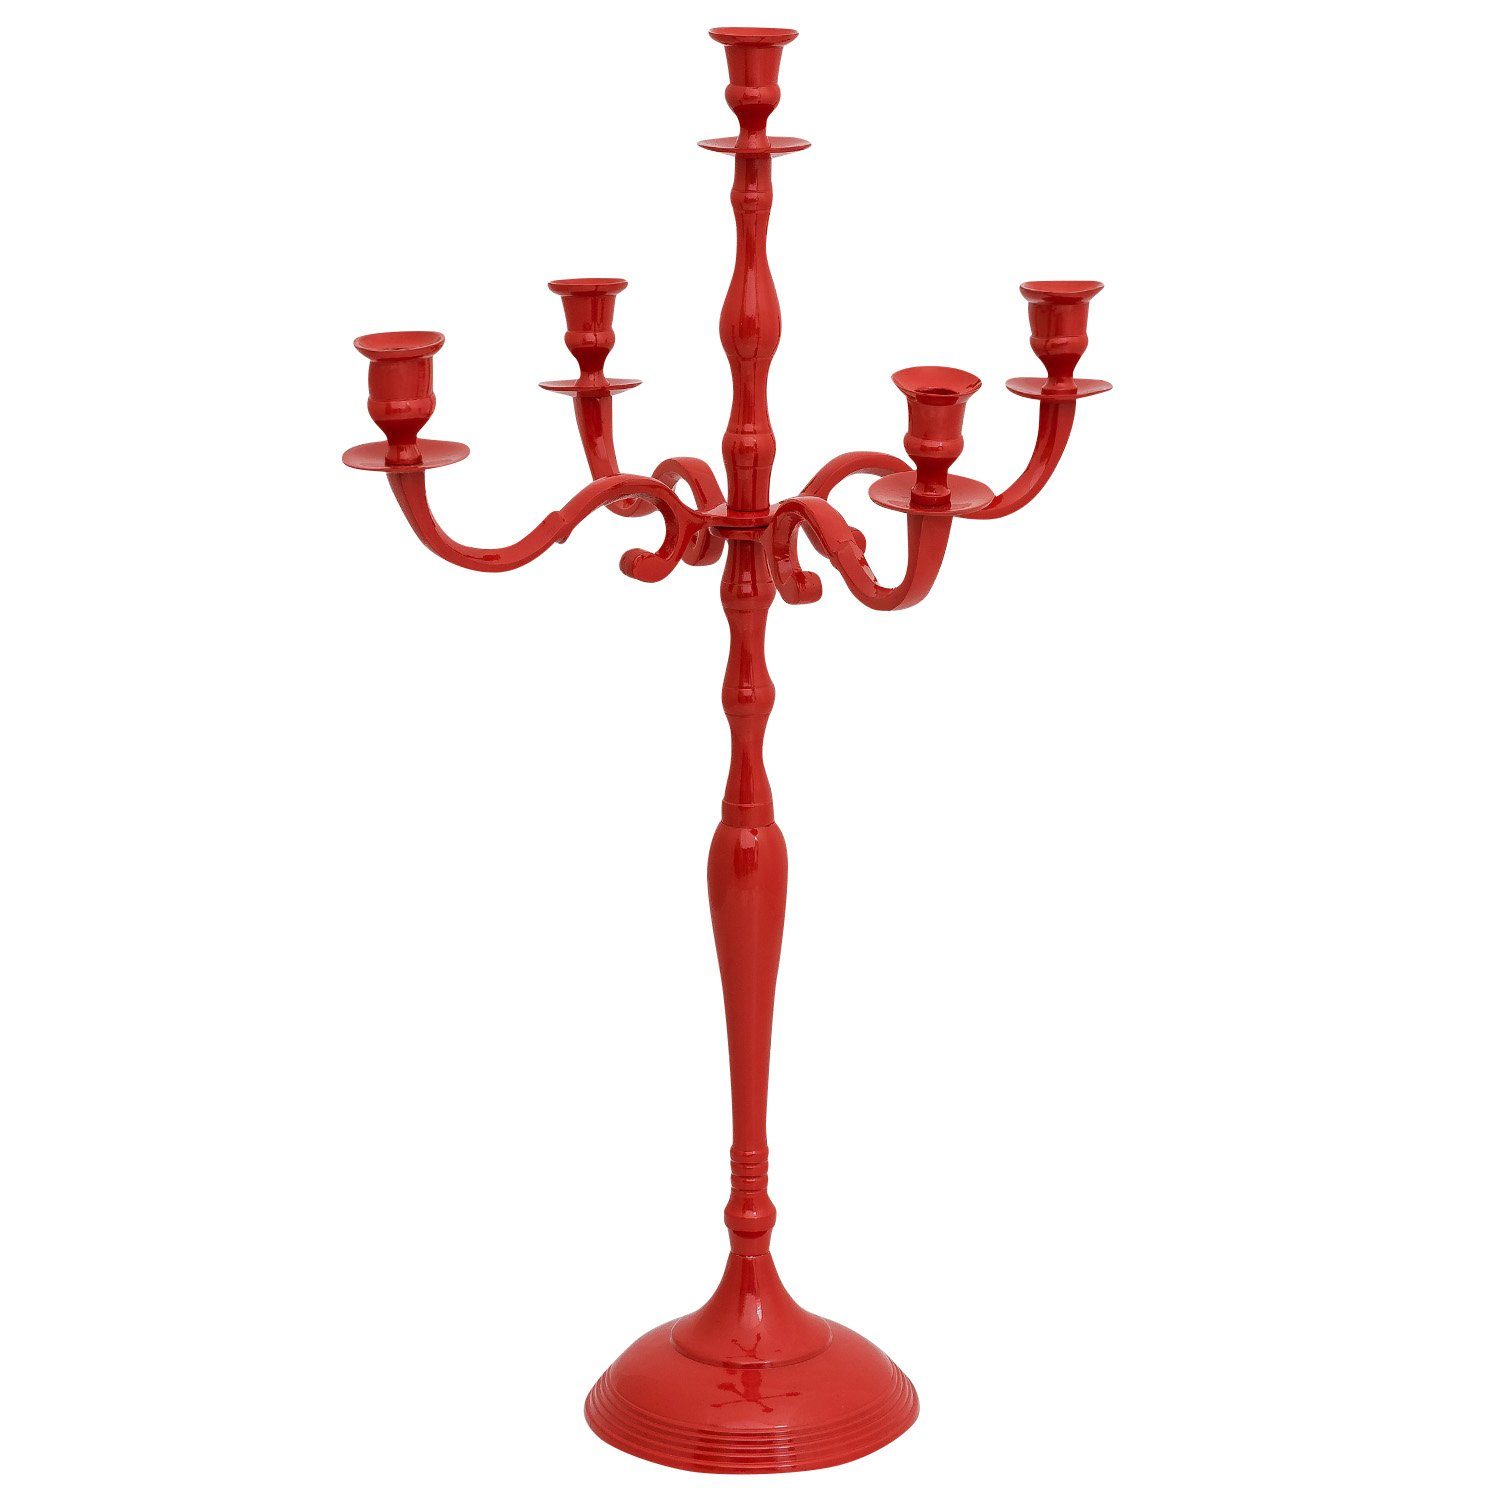 Aubaho Kerzenständer Kerzenhalter Kerzenständer Aluminium 78cm 5-armig rot Antik-Stil